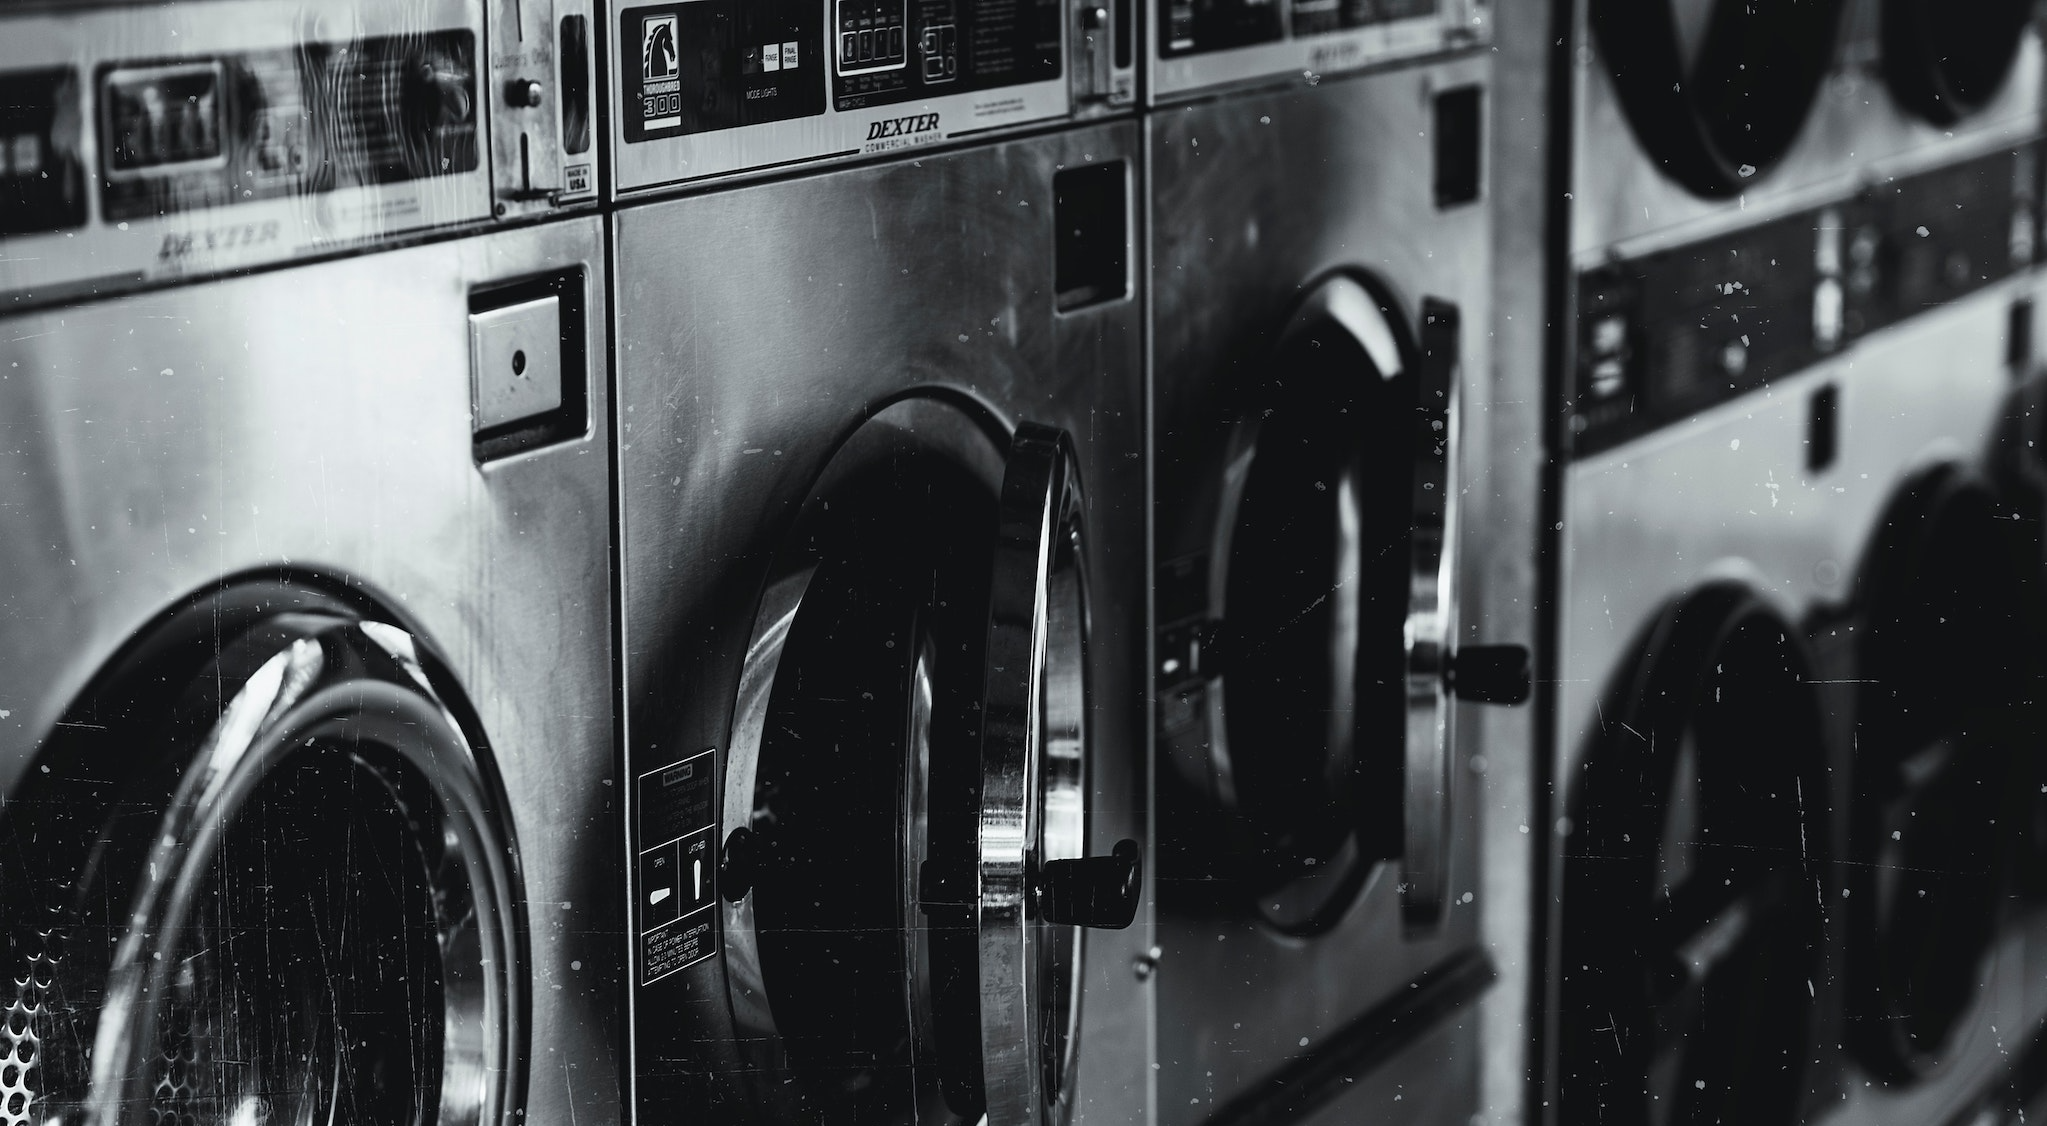 Bild von mehreren Waschmaschinen nebeneinander, die als Symbol für Greenwashing stehen